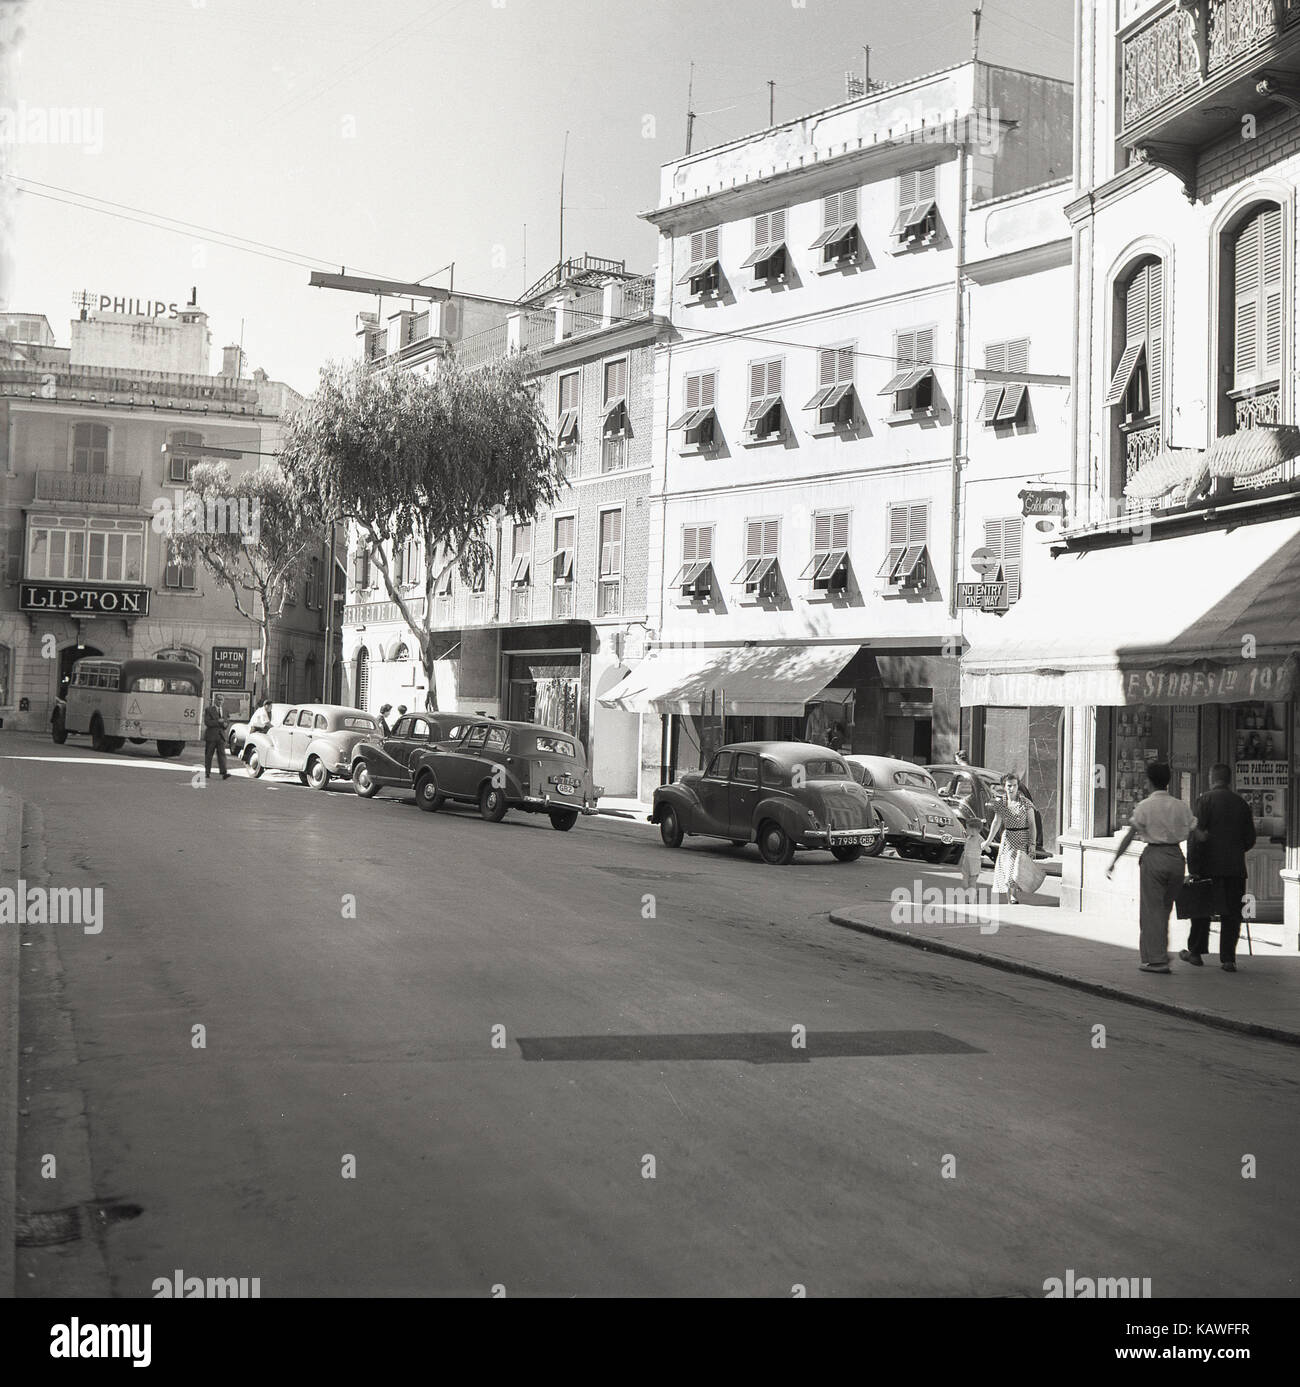 Degli anni Cinquanta, foto storiche da J Allan Cash del Giro del passaggio, Southport, Gibilterra, mostra auto, negozi e uno chiamato Lipton pubblicità disposizioni fresco settimanalmente. Foto Stock